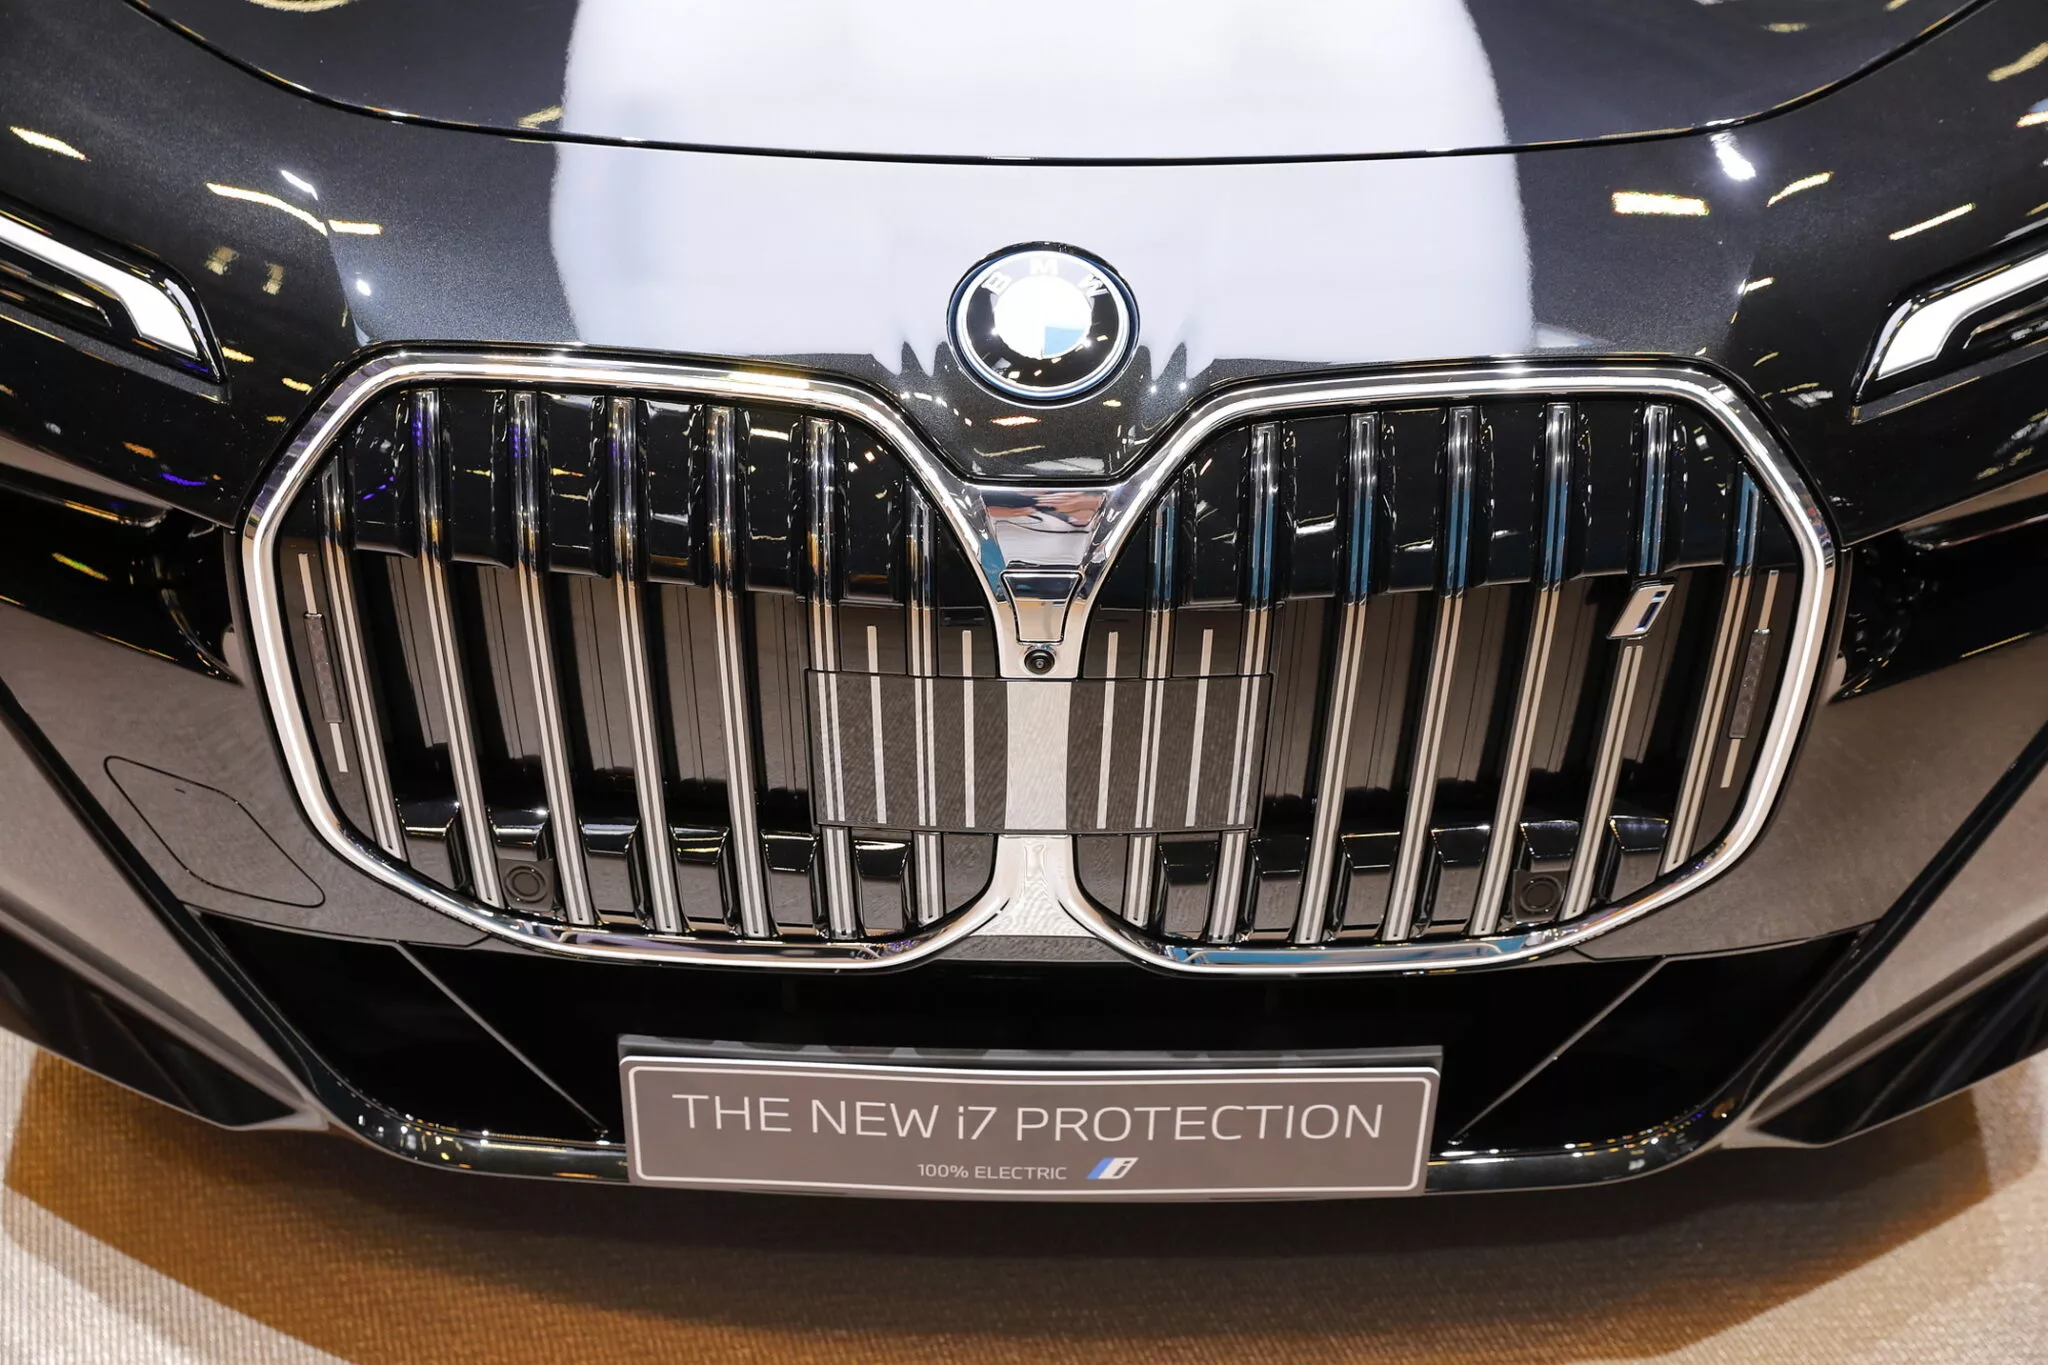 بي ام دبليو i7 Protection الجديدة هي أول سيدان كهربائية مصفحة في العالم 18